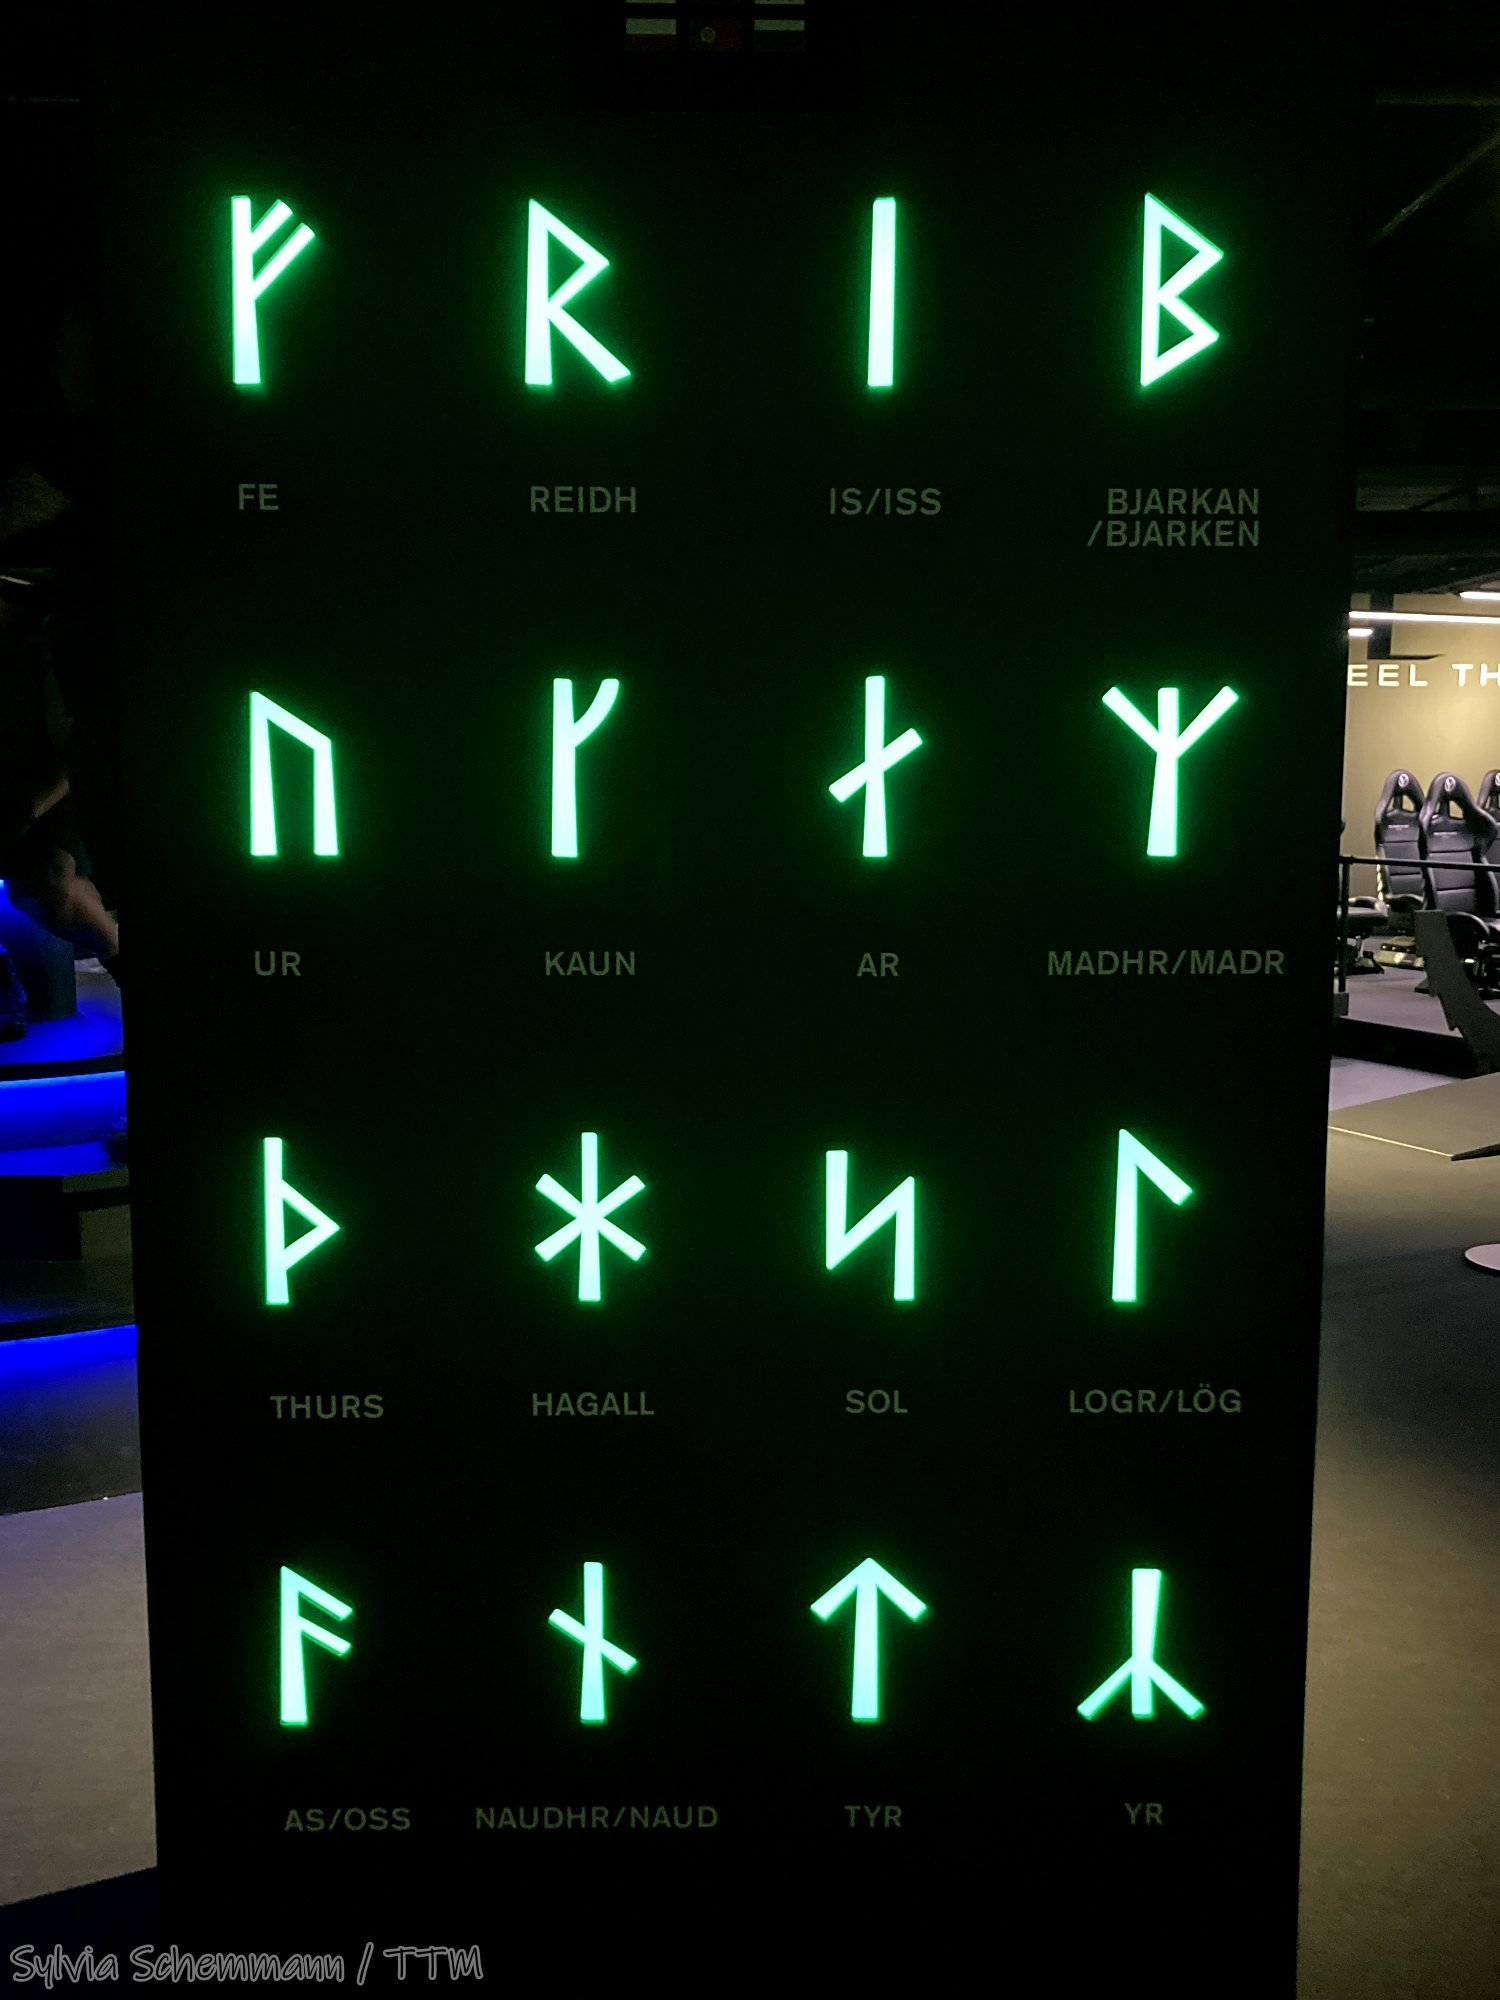 Eine schwarze Tafel, auf der in grüner Leuchtschrift Runen zu sehen sind.